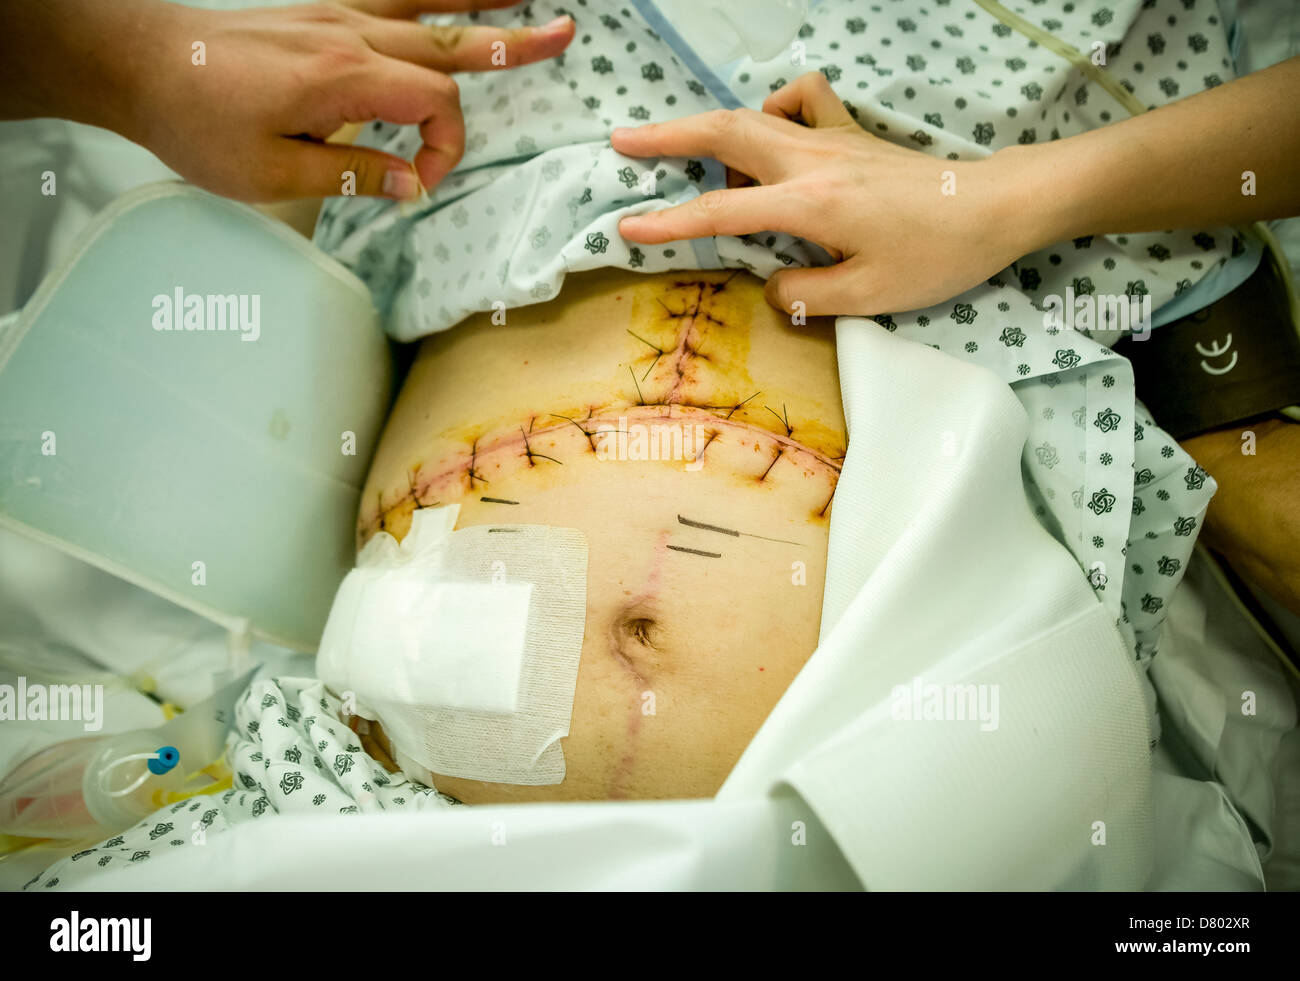 Le personnel médical s'occuper d'un patient qui a fait des points de suture dans la région abdominale après l'opération, sur une unité de soins intensifs. Banque D'Images